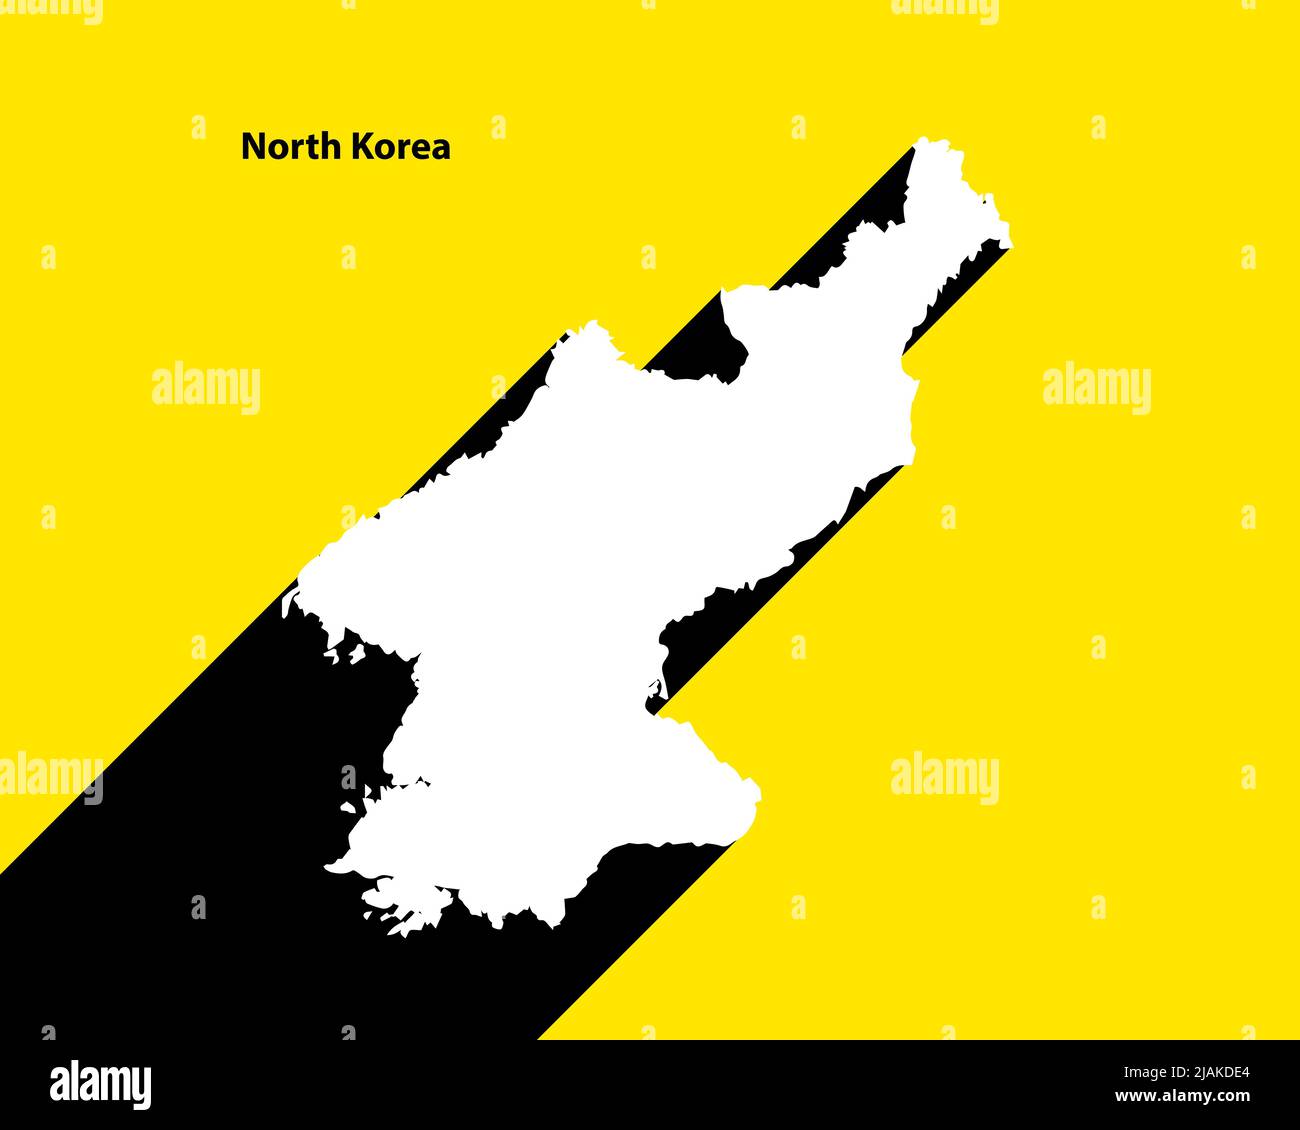 Mappa della Corea del Nord su poster retrò con lunga ombra. Segno vintage facile da modificare, manipolare, ridimensionare o colorare. Illustrazione Vettoriale